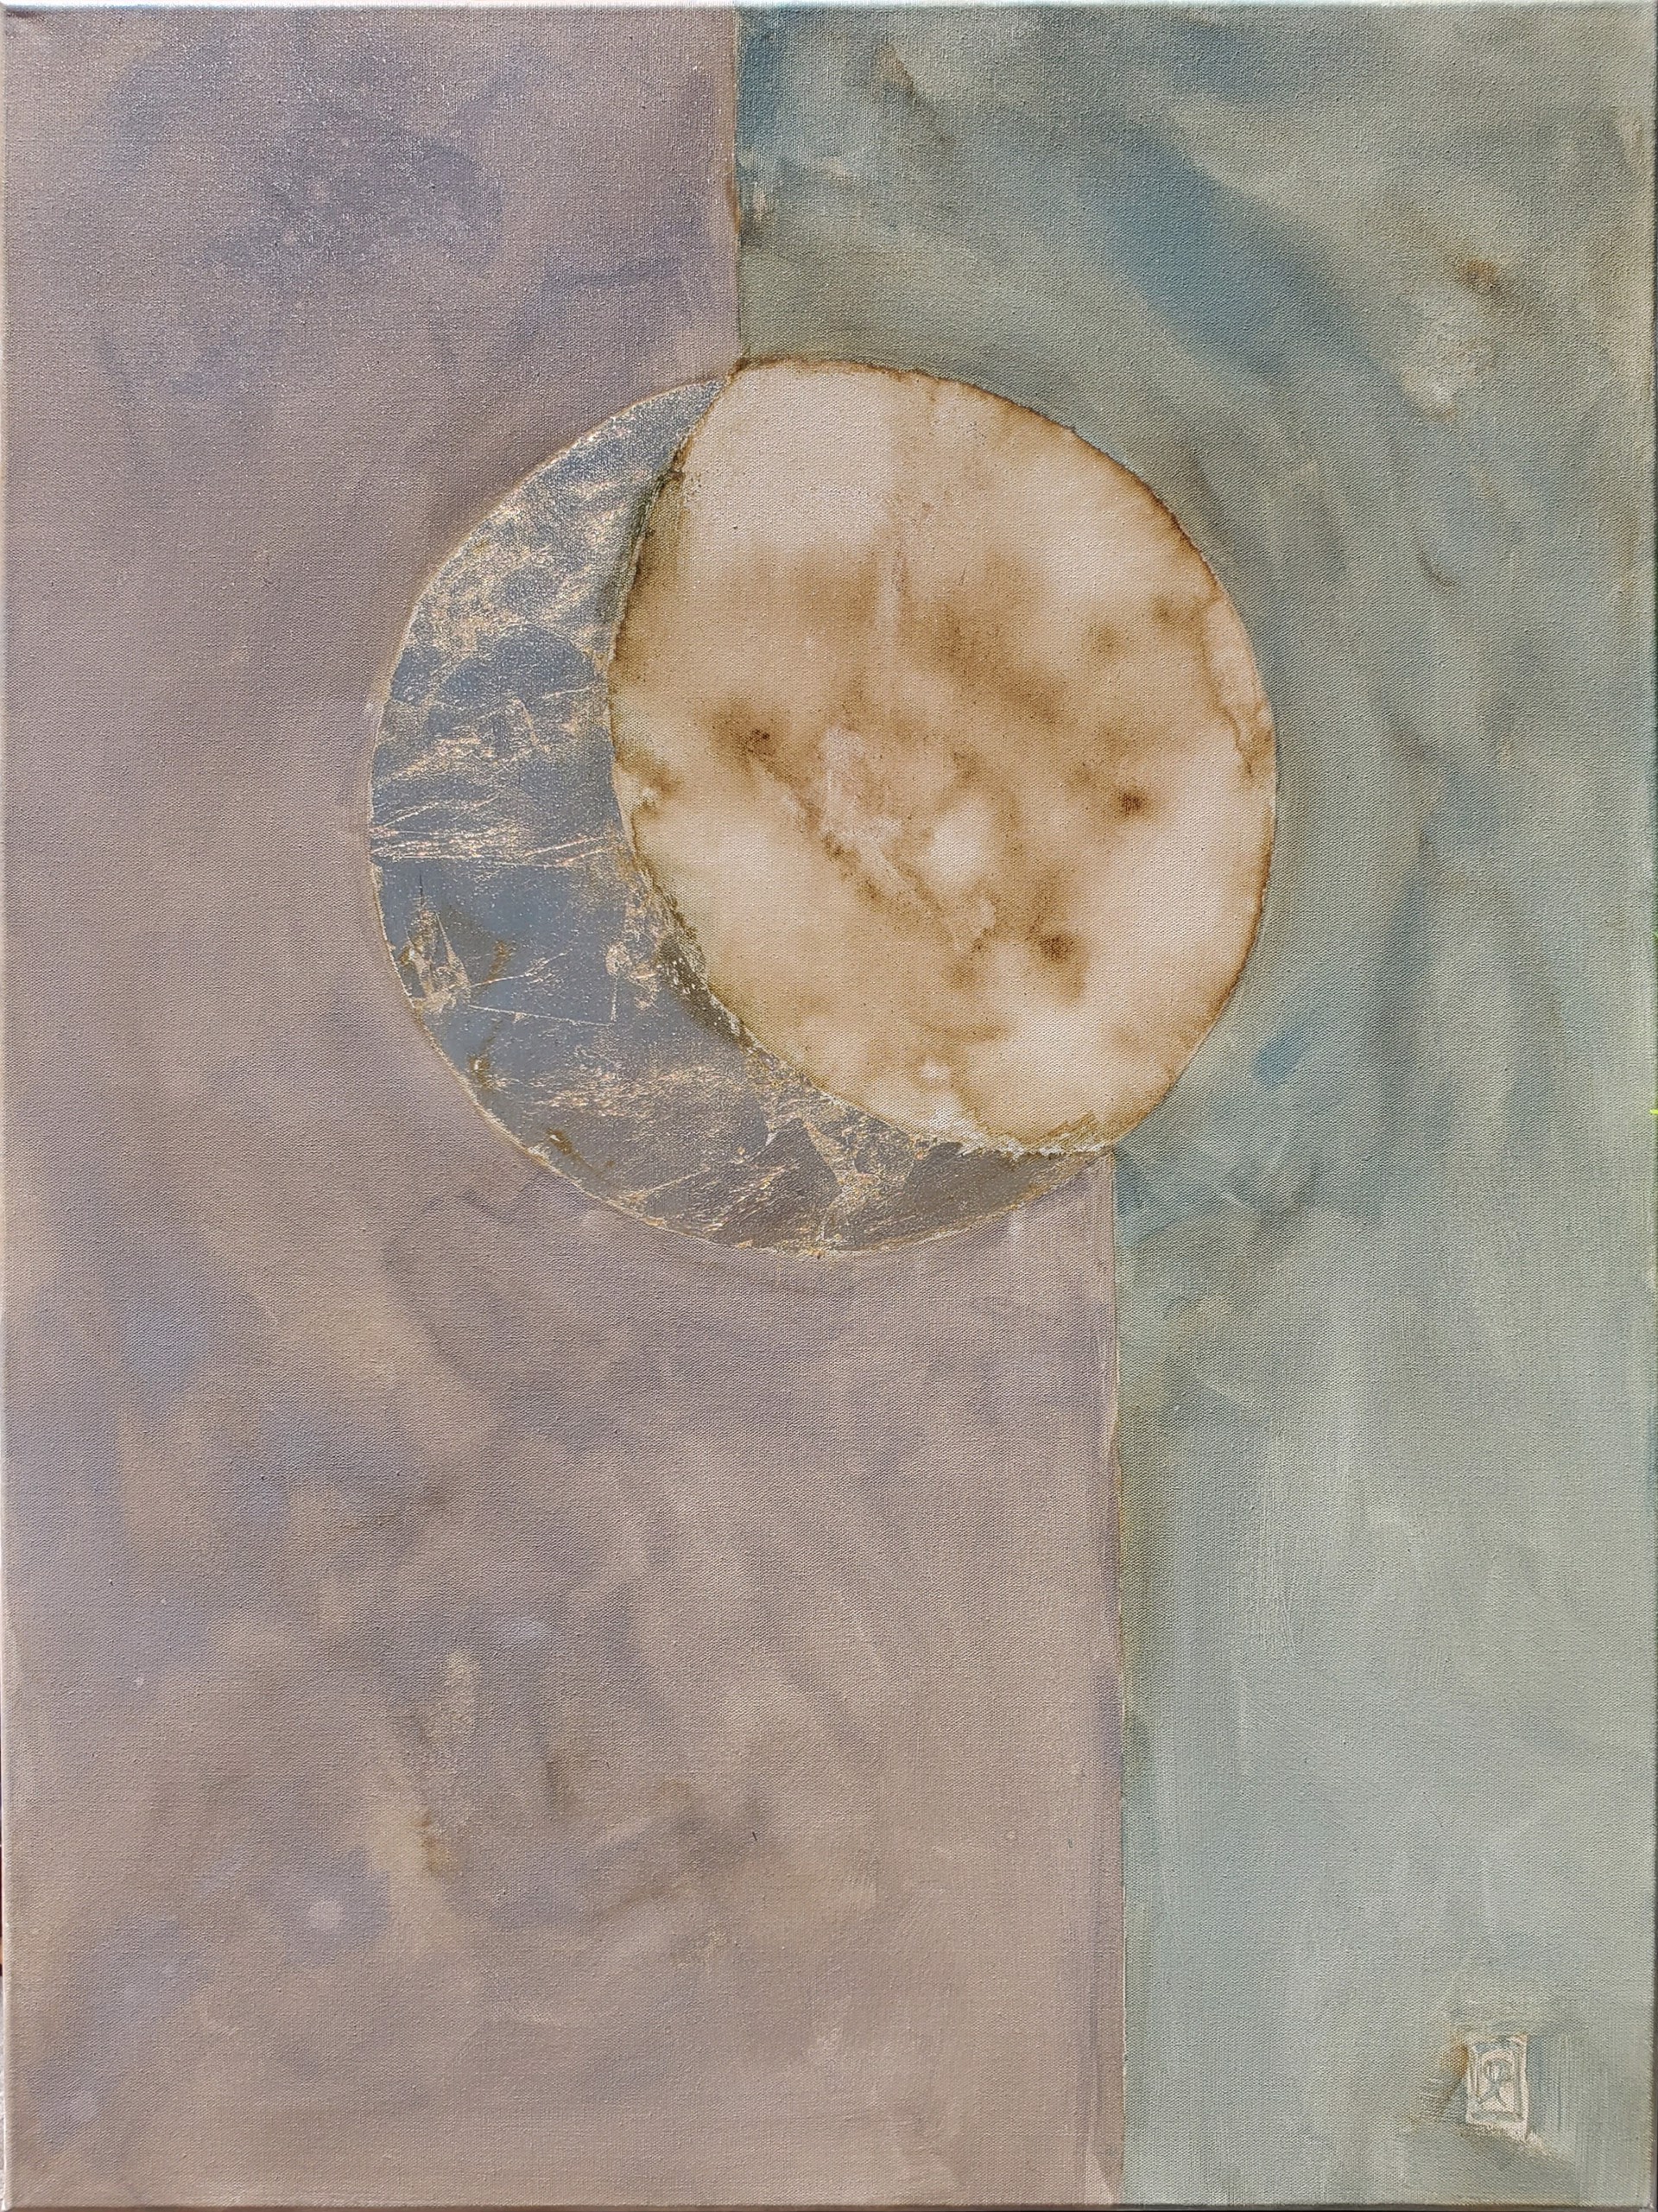 Verdigris Moon by Laura Roebuck